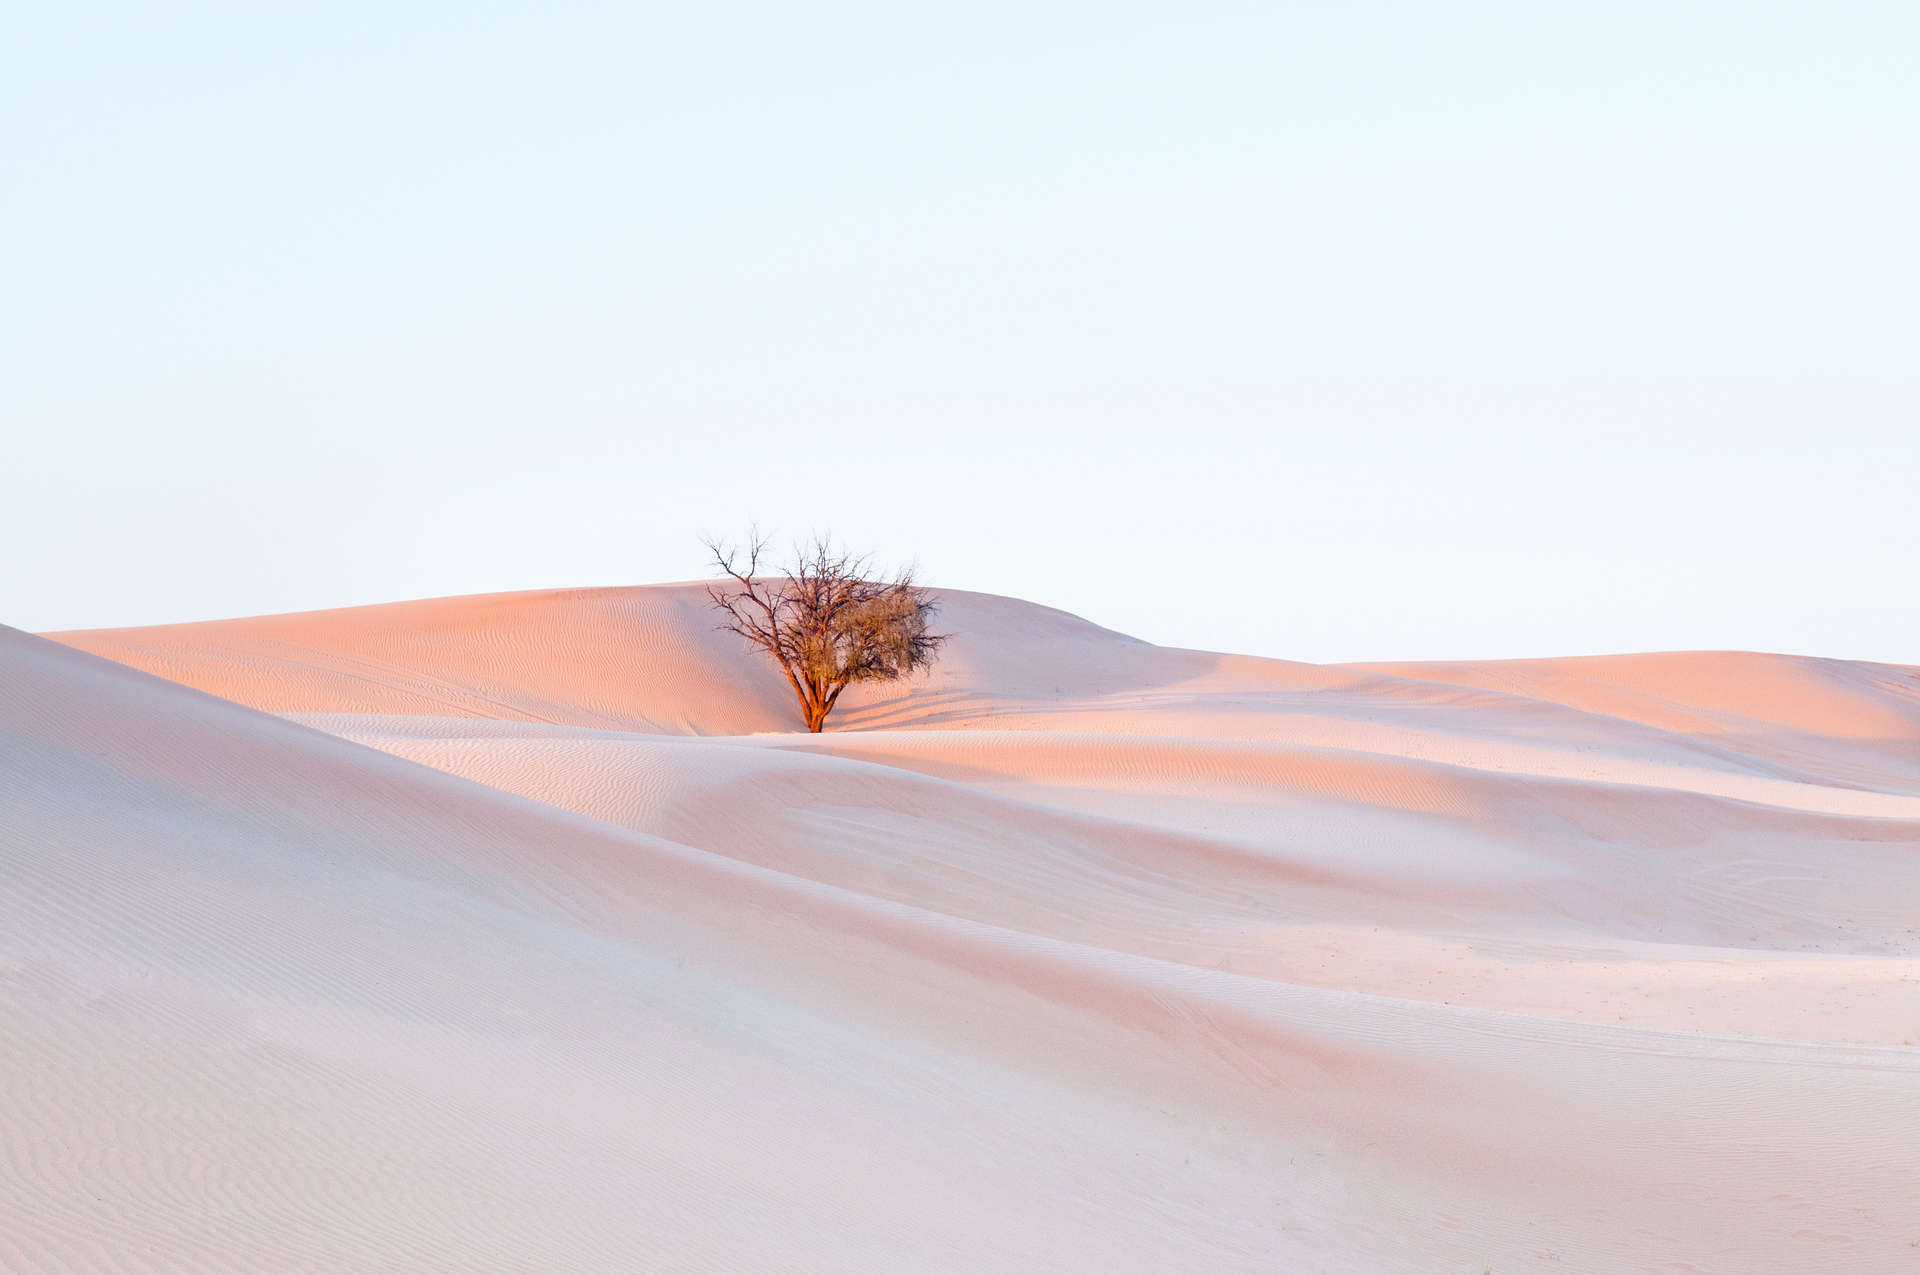 Tree in the desert in Al Wathba